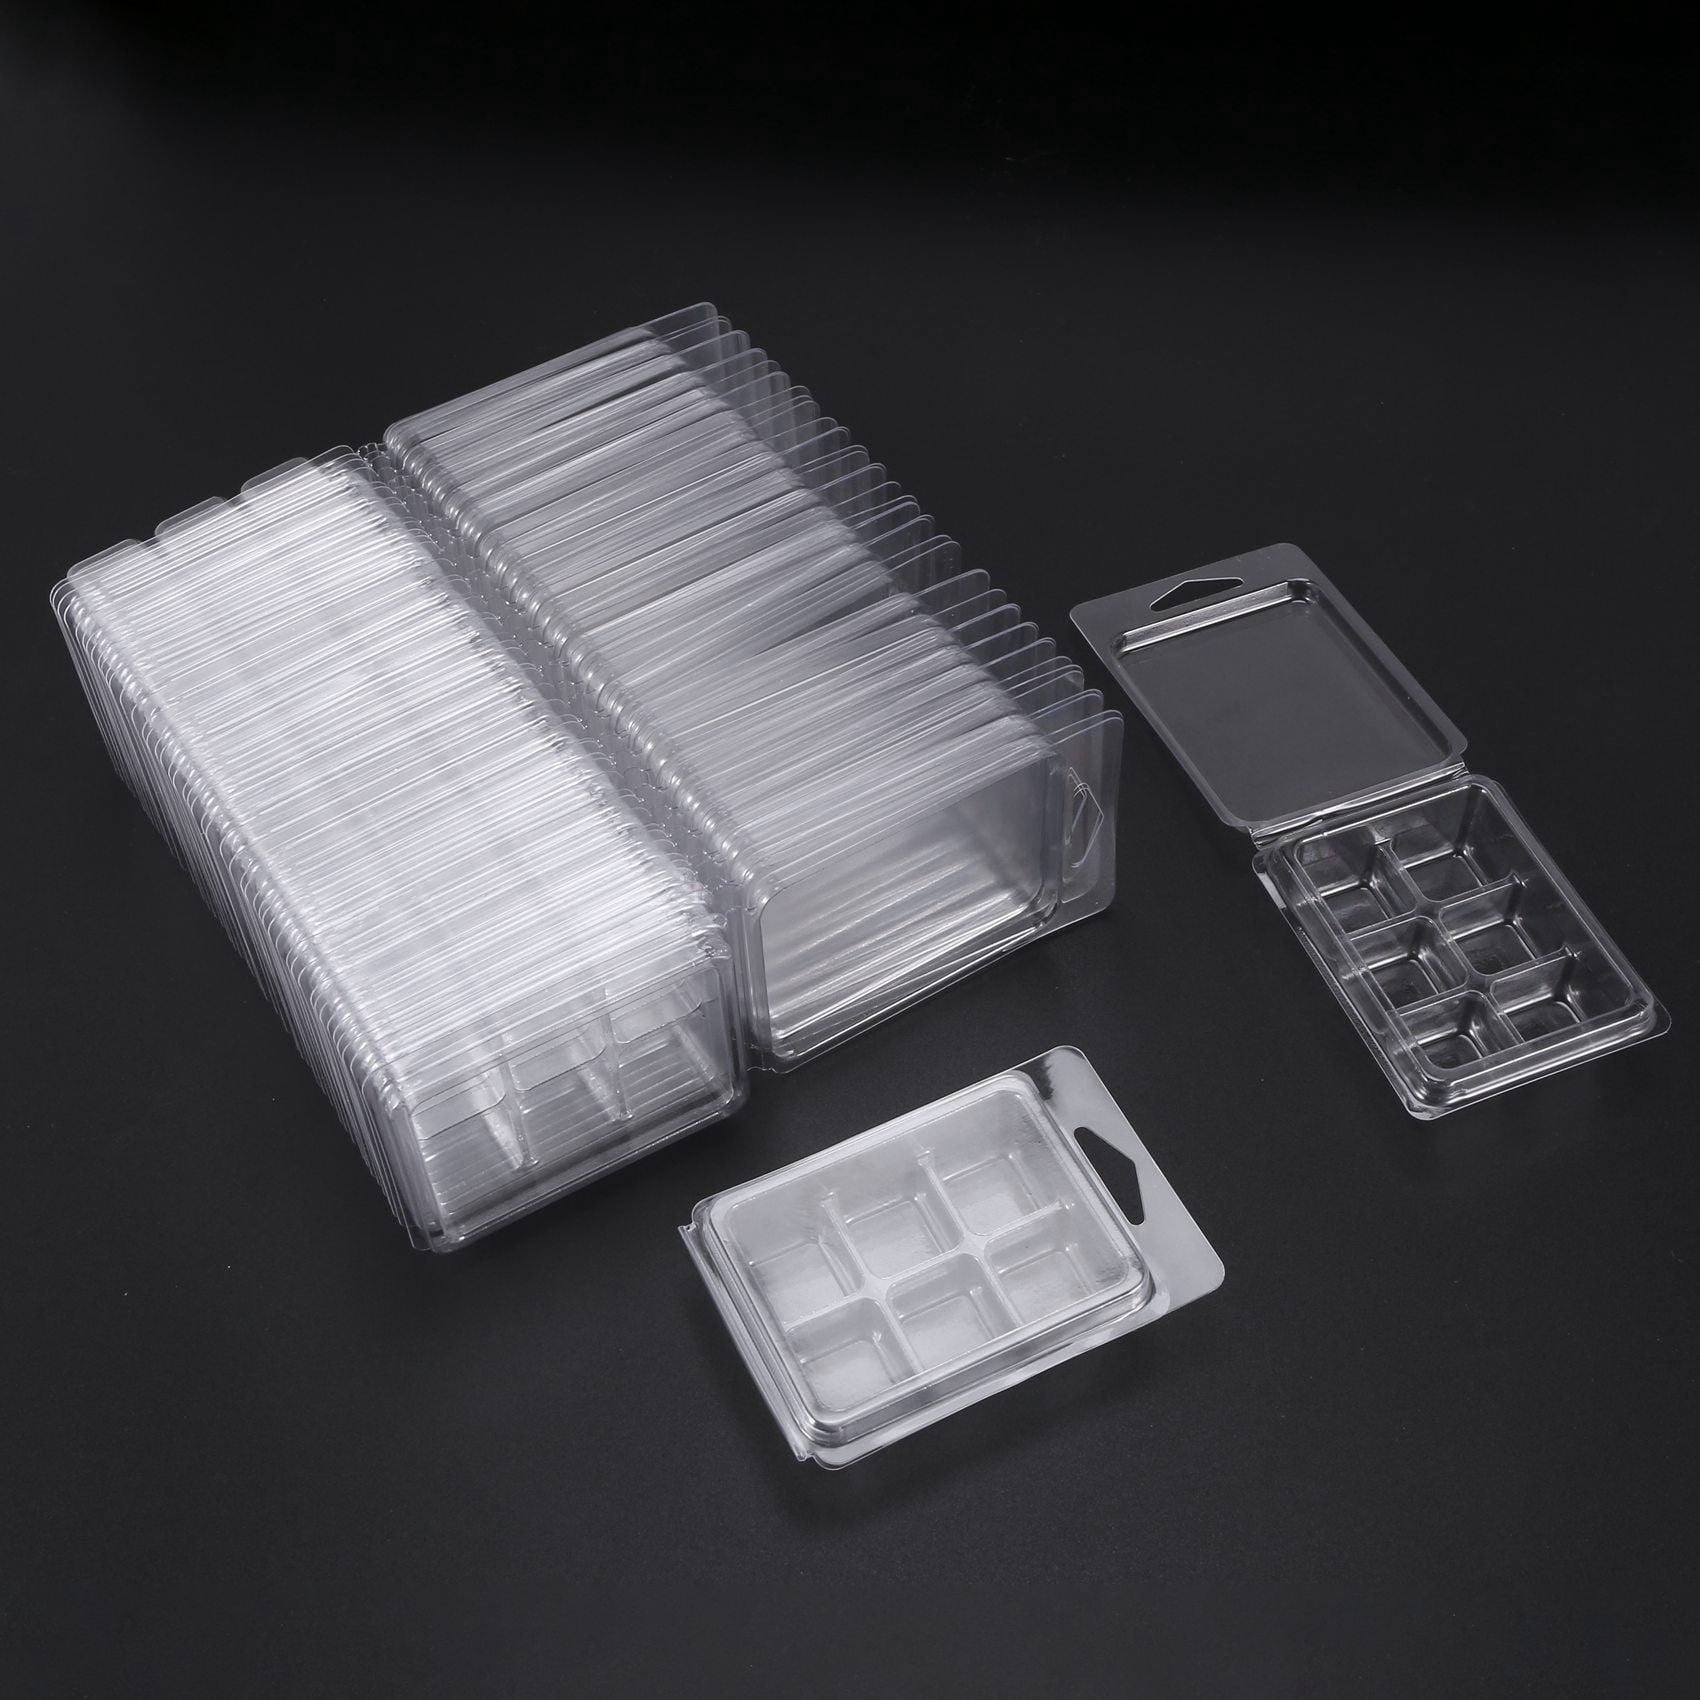  DGQ Wax Melt Molds - 100 Packs Clear Empty Plastic Wax Melt  Clamshells for Wickless Wax Melt Candles